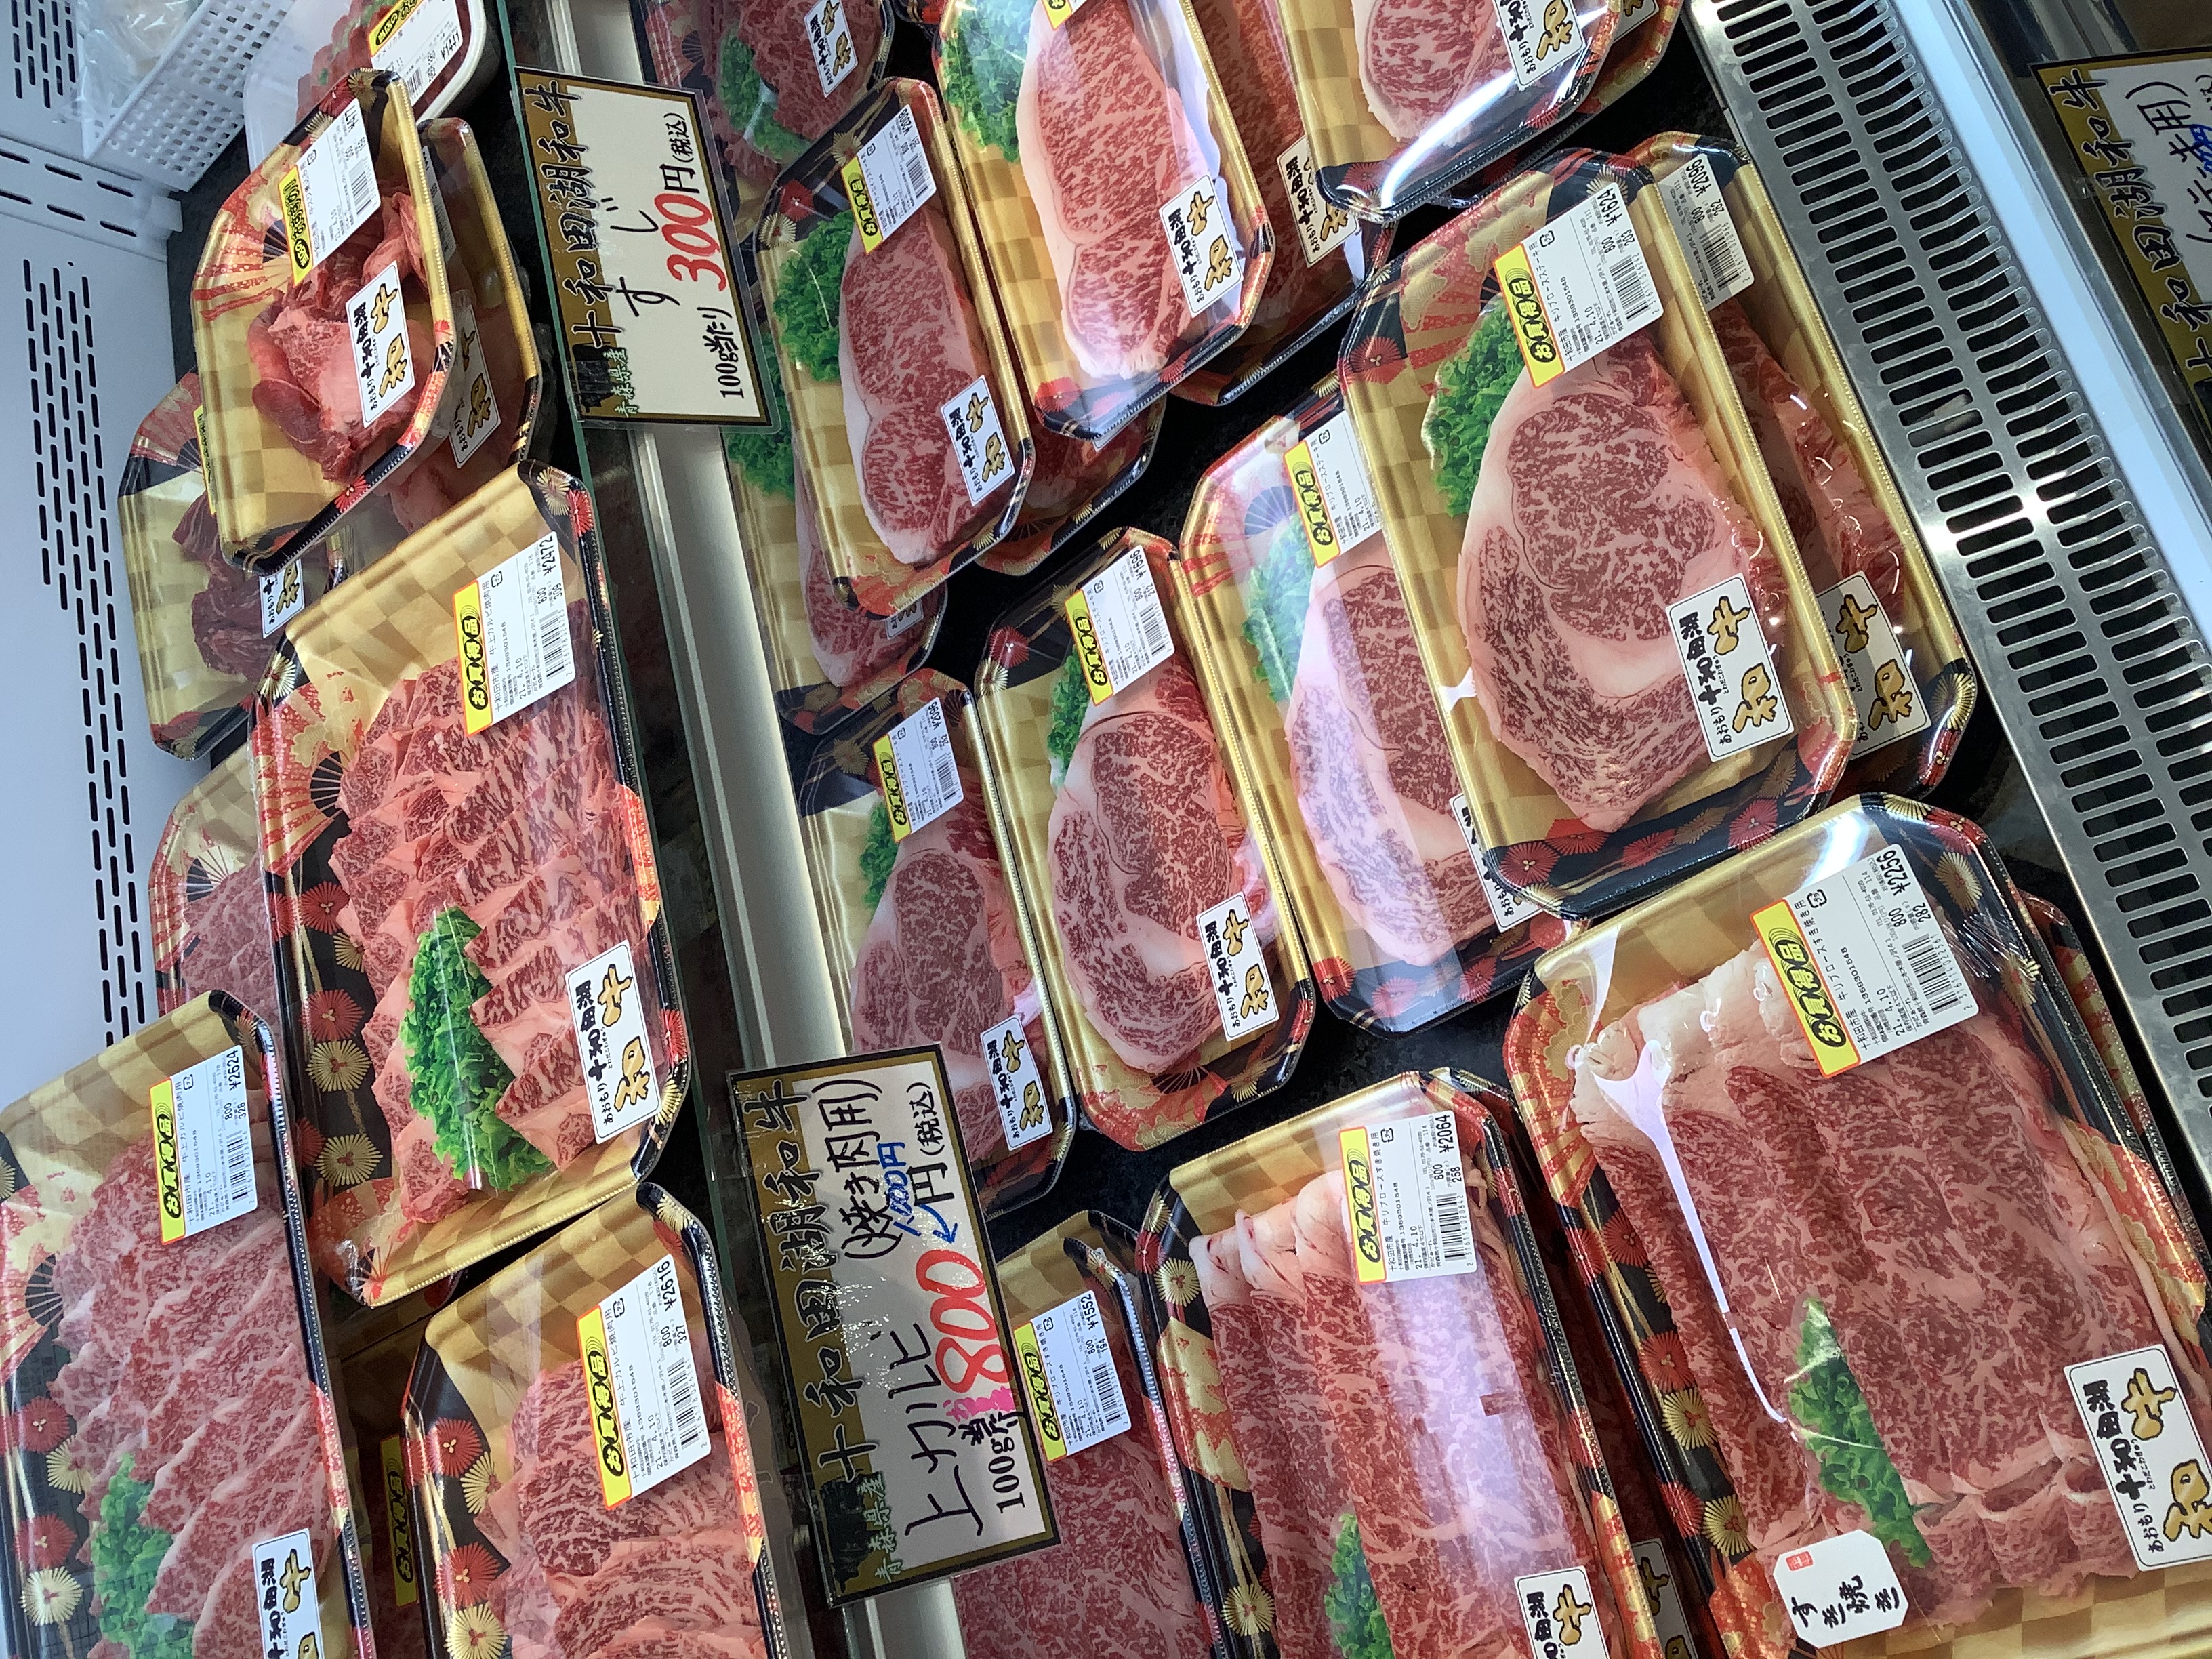 十和田市名産の馬肉などの約50種類のお肉が週替わりでお買い得に販売